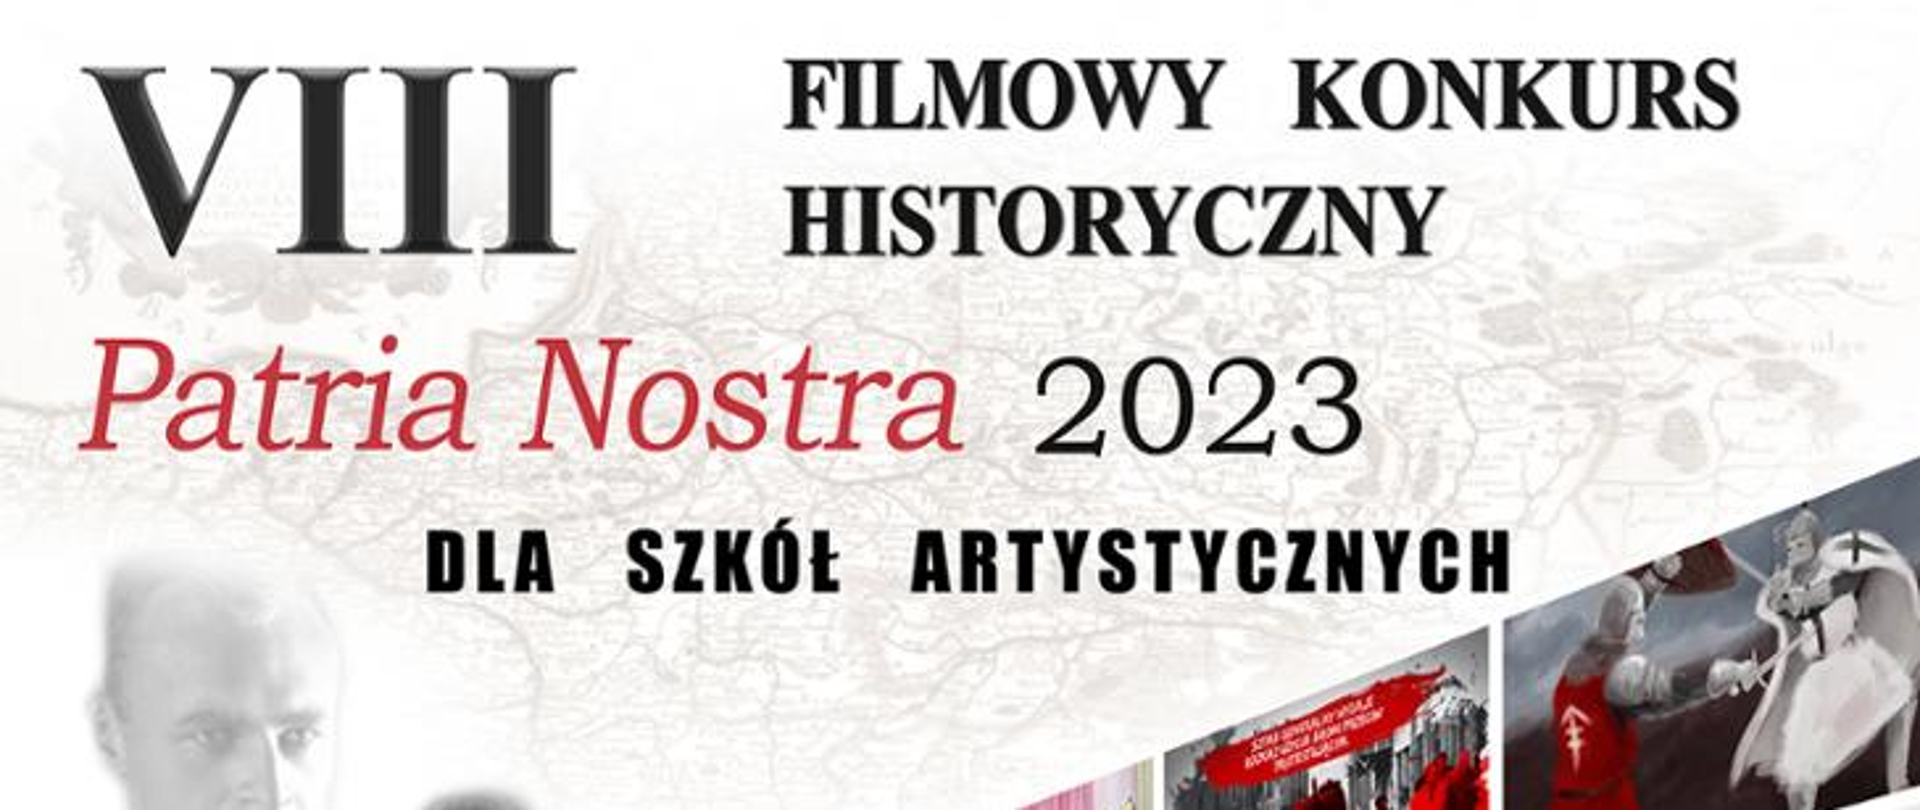 Plakat biało czerwony Konkursu Patria Nostra 2023 z postaciami znanych Polaków i informacją o konkursie.